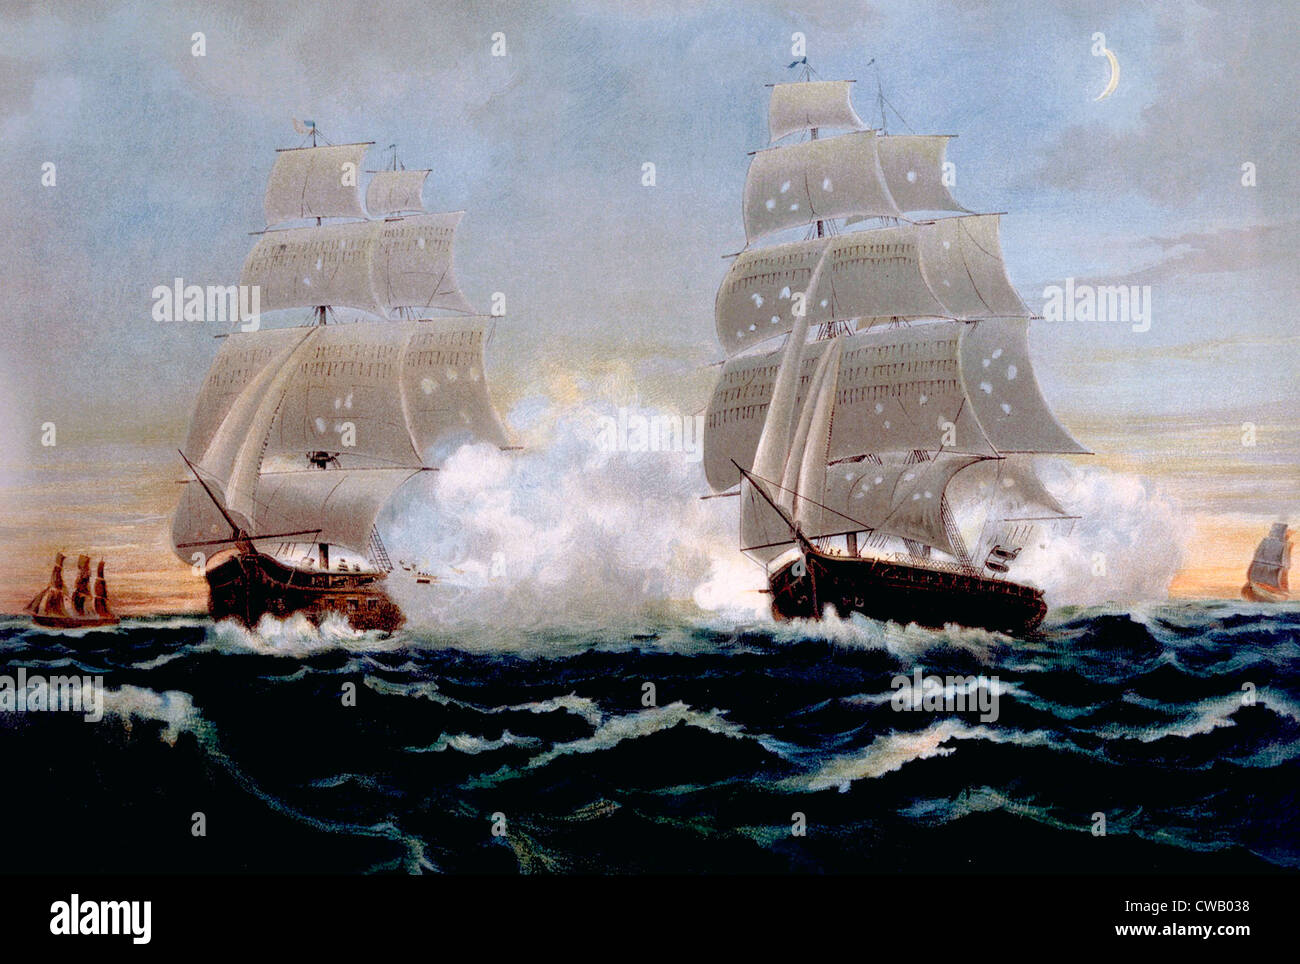 La guerre de 1812, les frégates américaines et britanniques dans la bataille, lithographie publié 1899 Banque D'Images